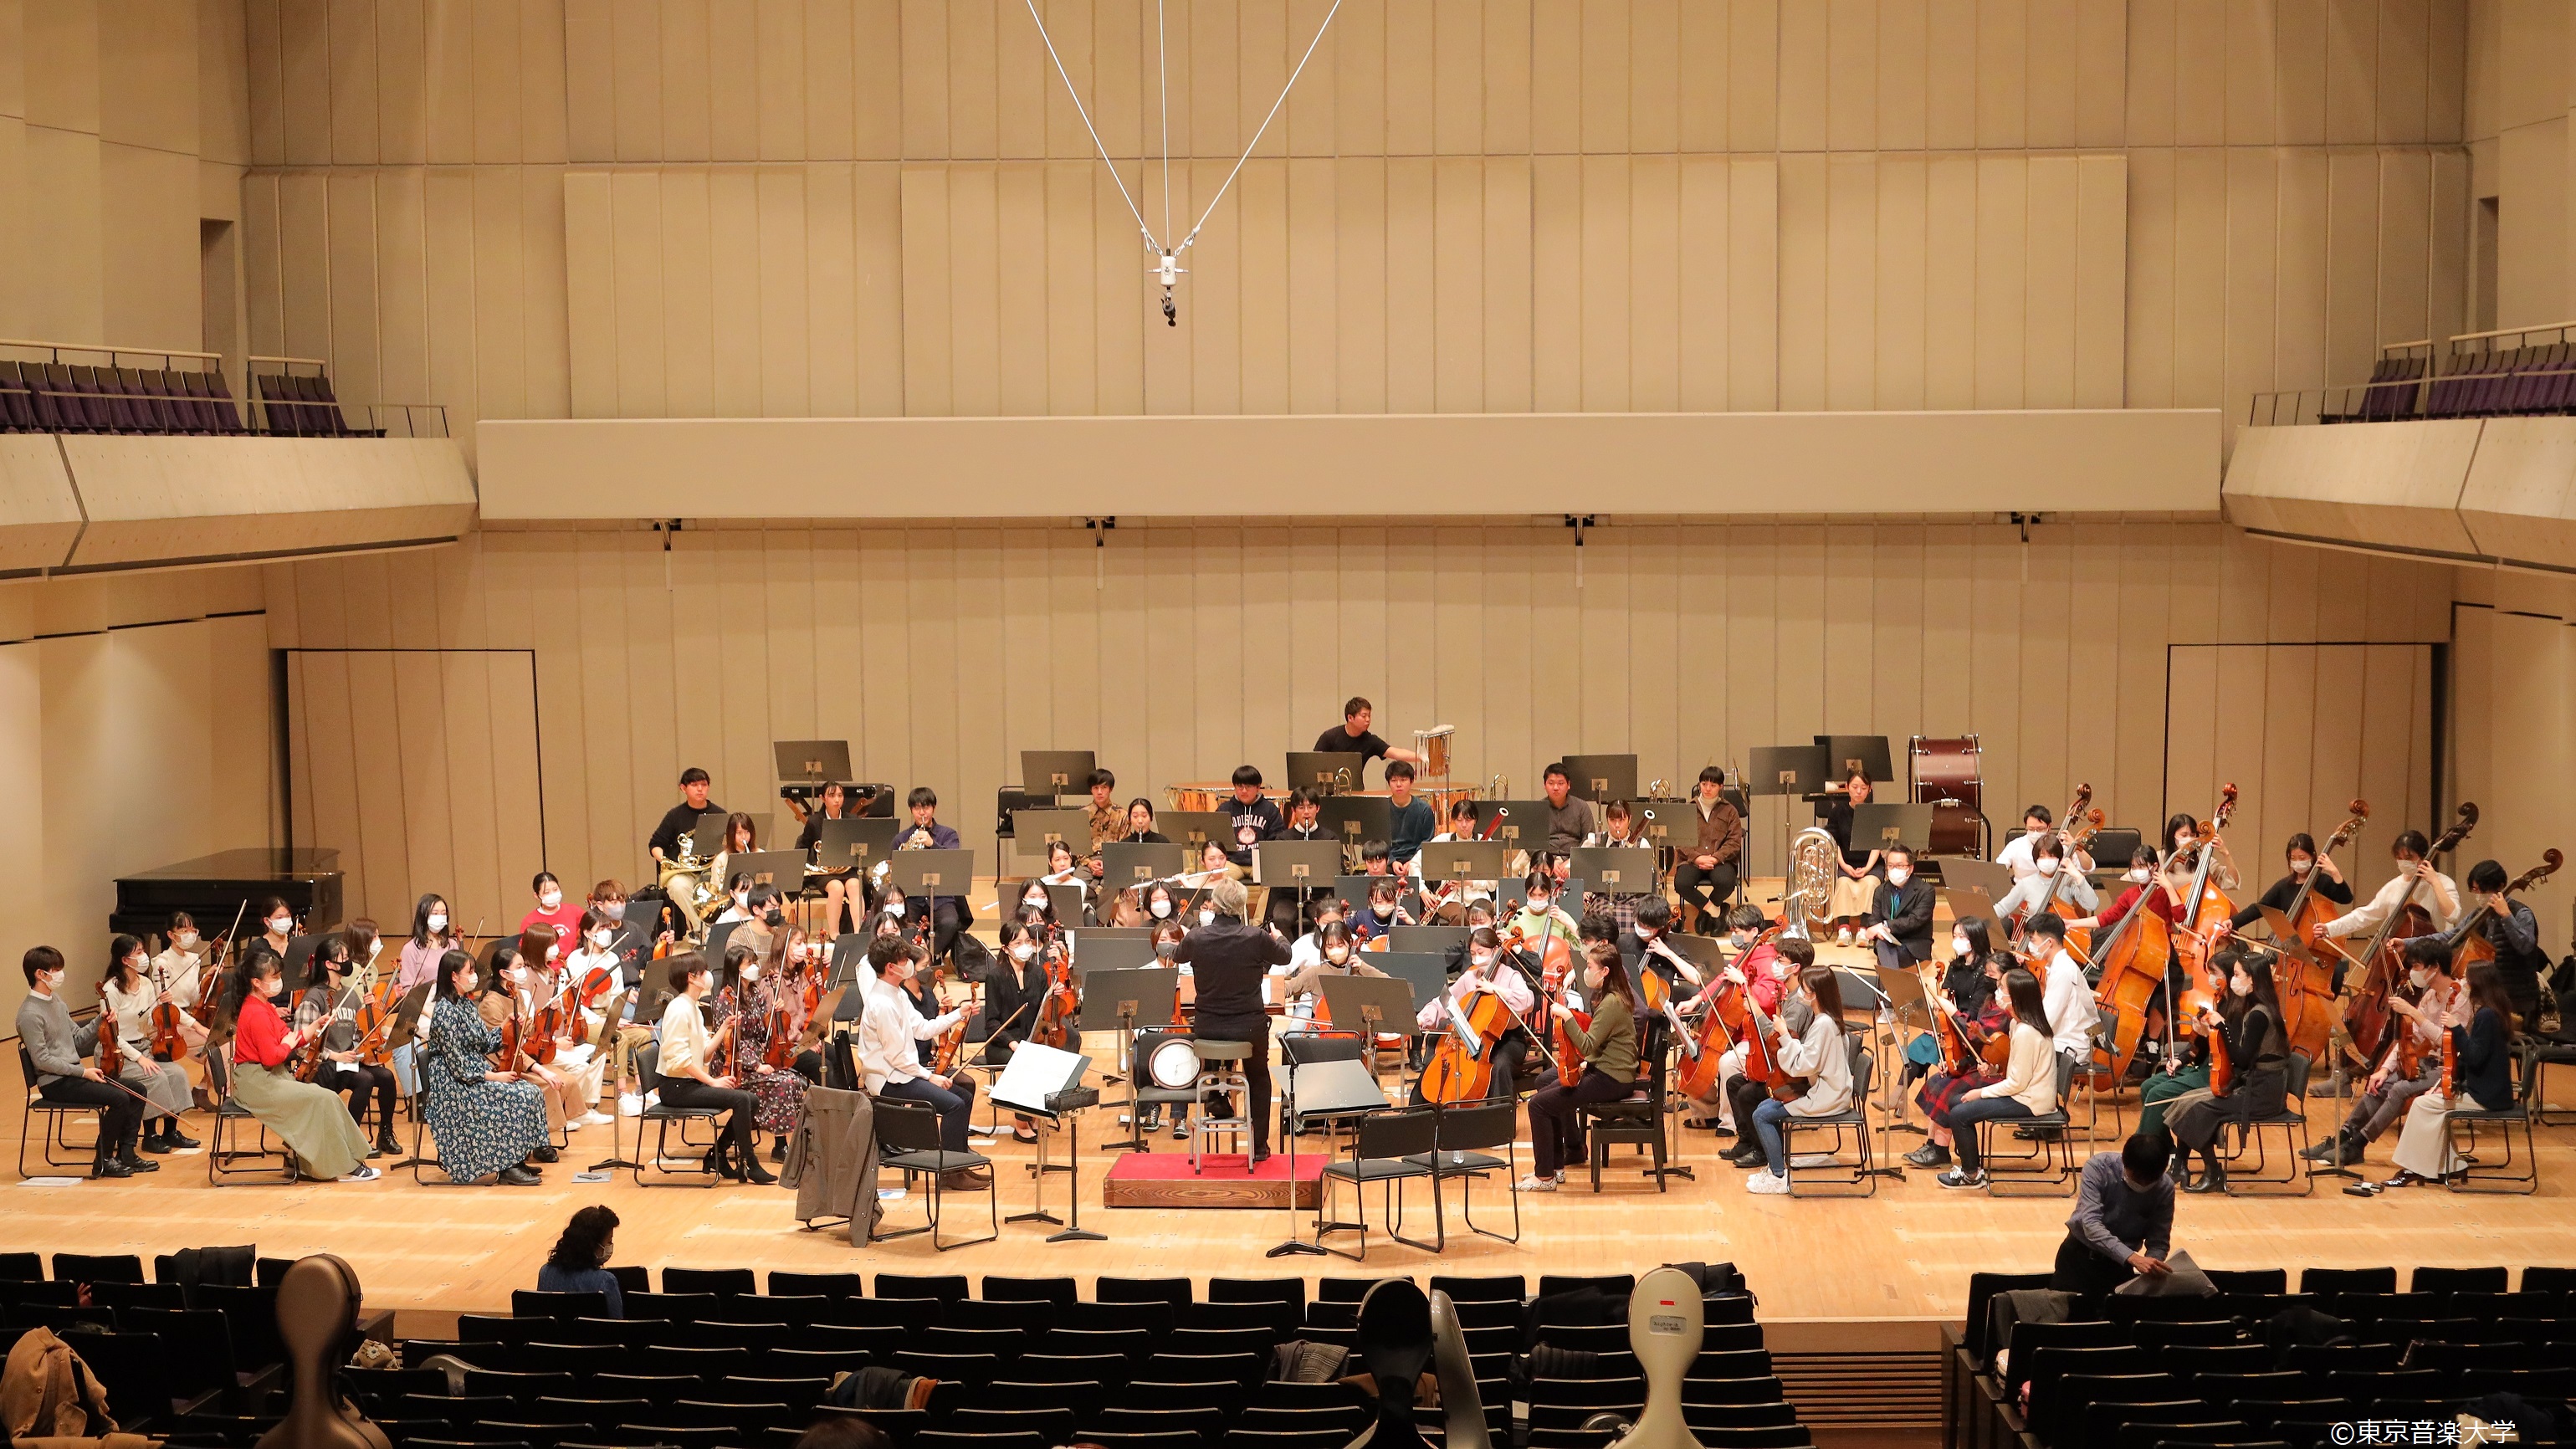 東京音楽大学シンフォニーオーケストラ定期演奏会12月14日本番に向けて、臨時練習が続く